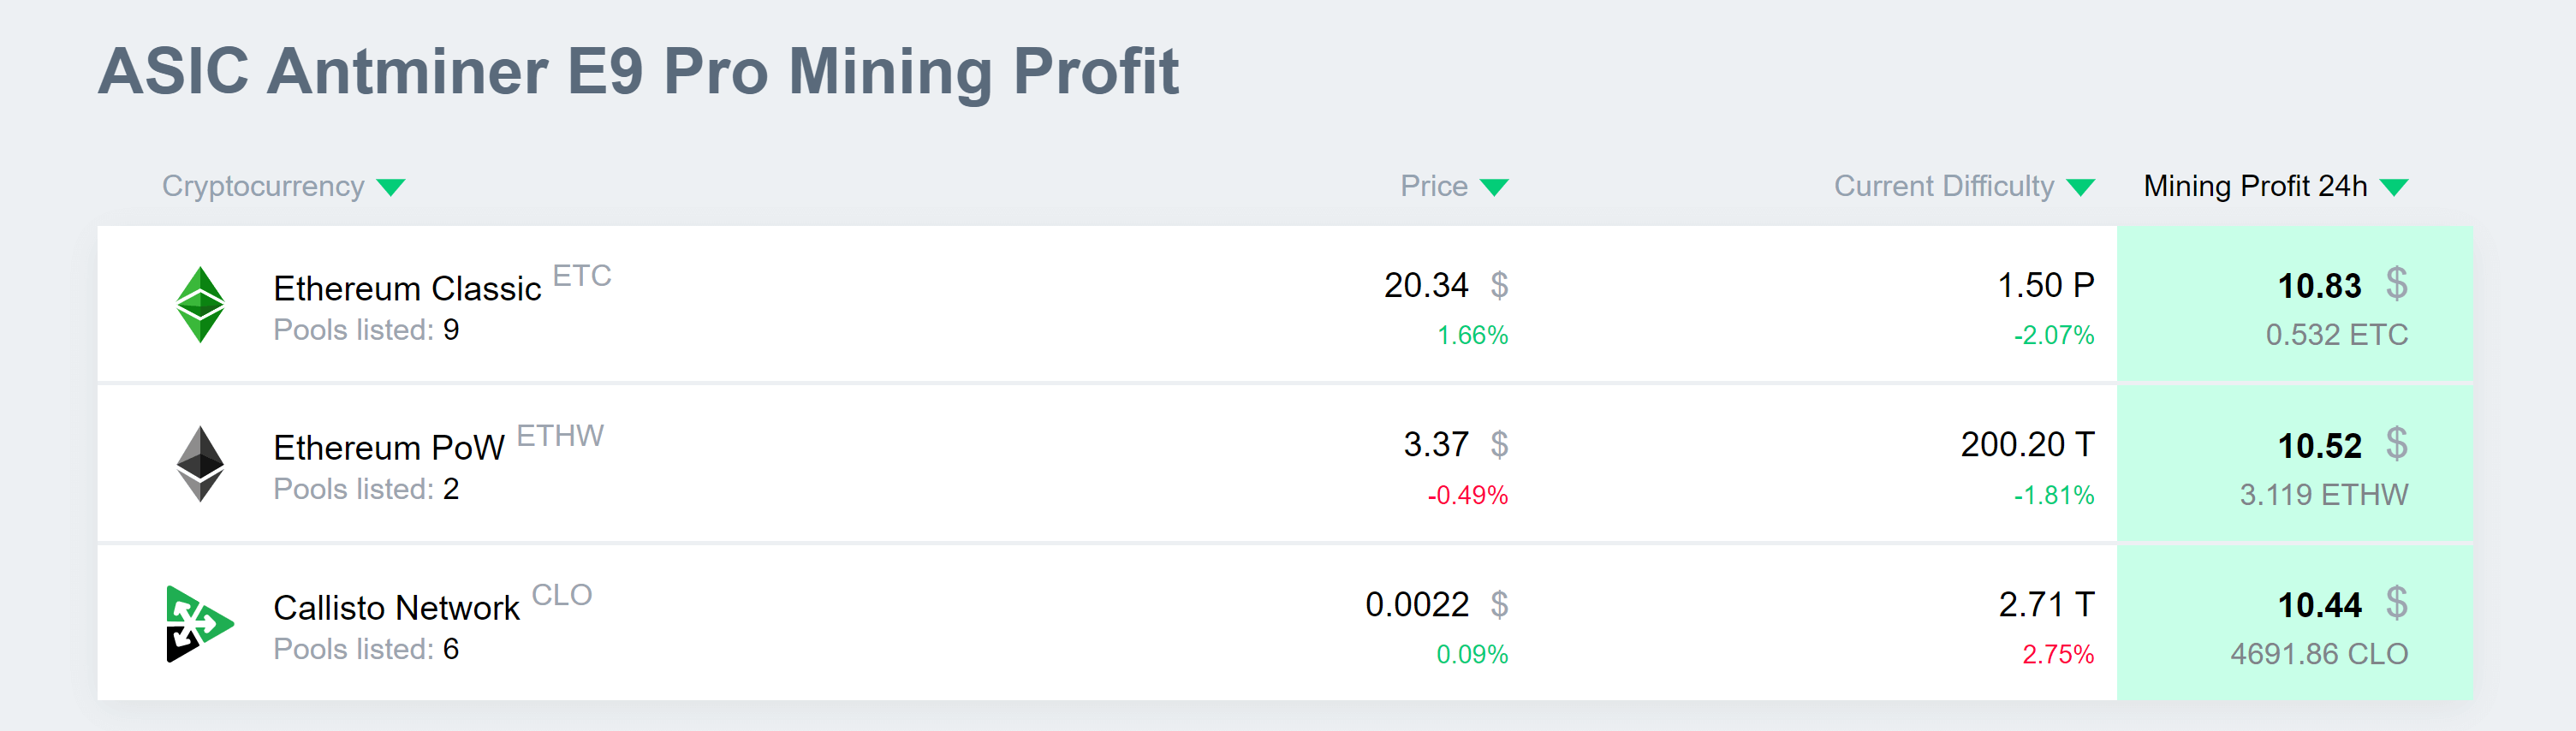 e9_pro_profit